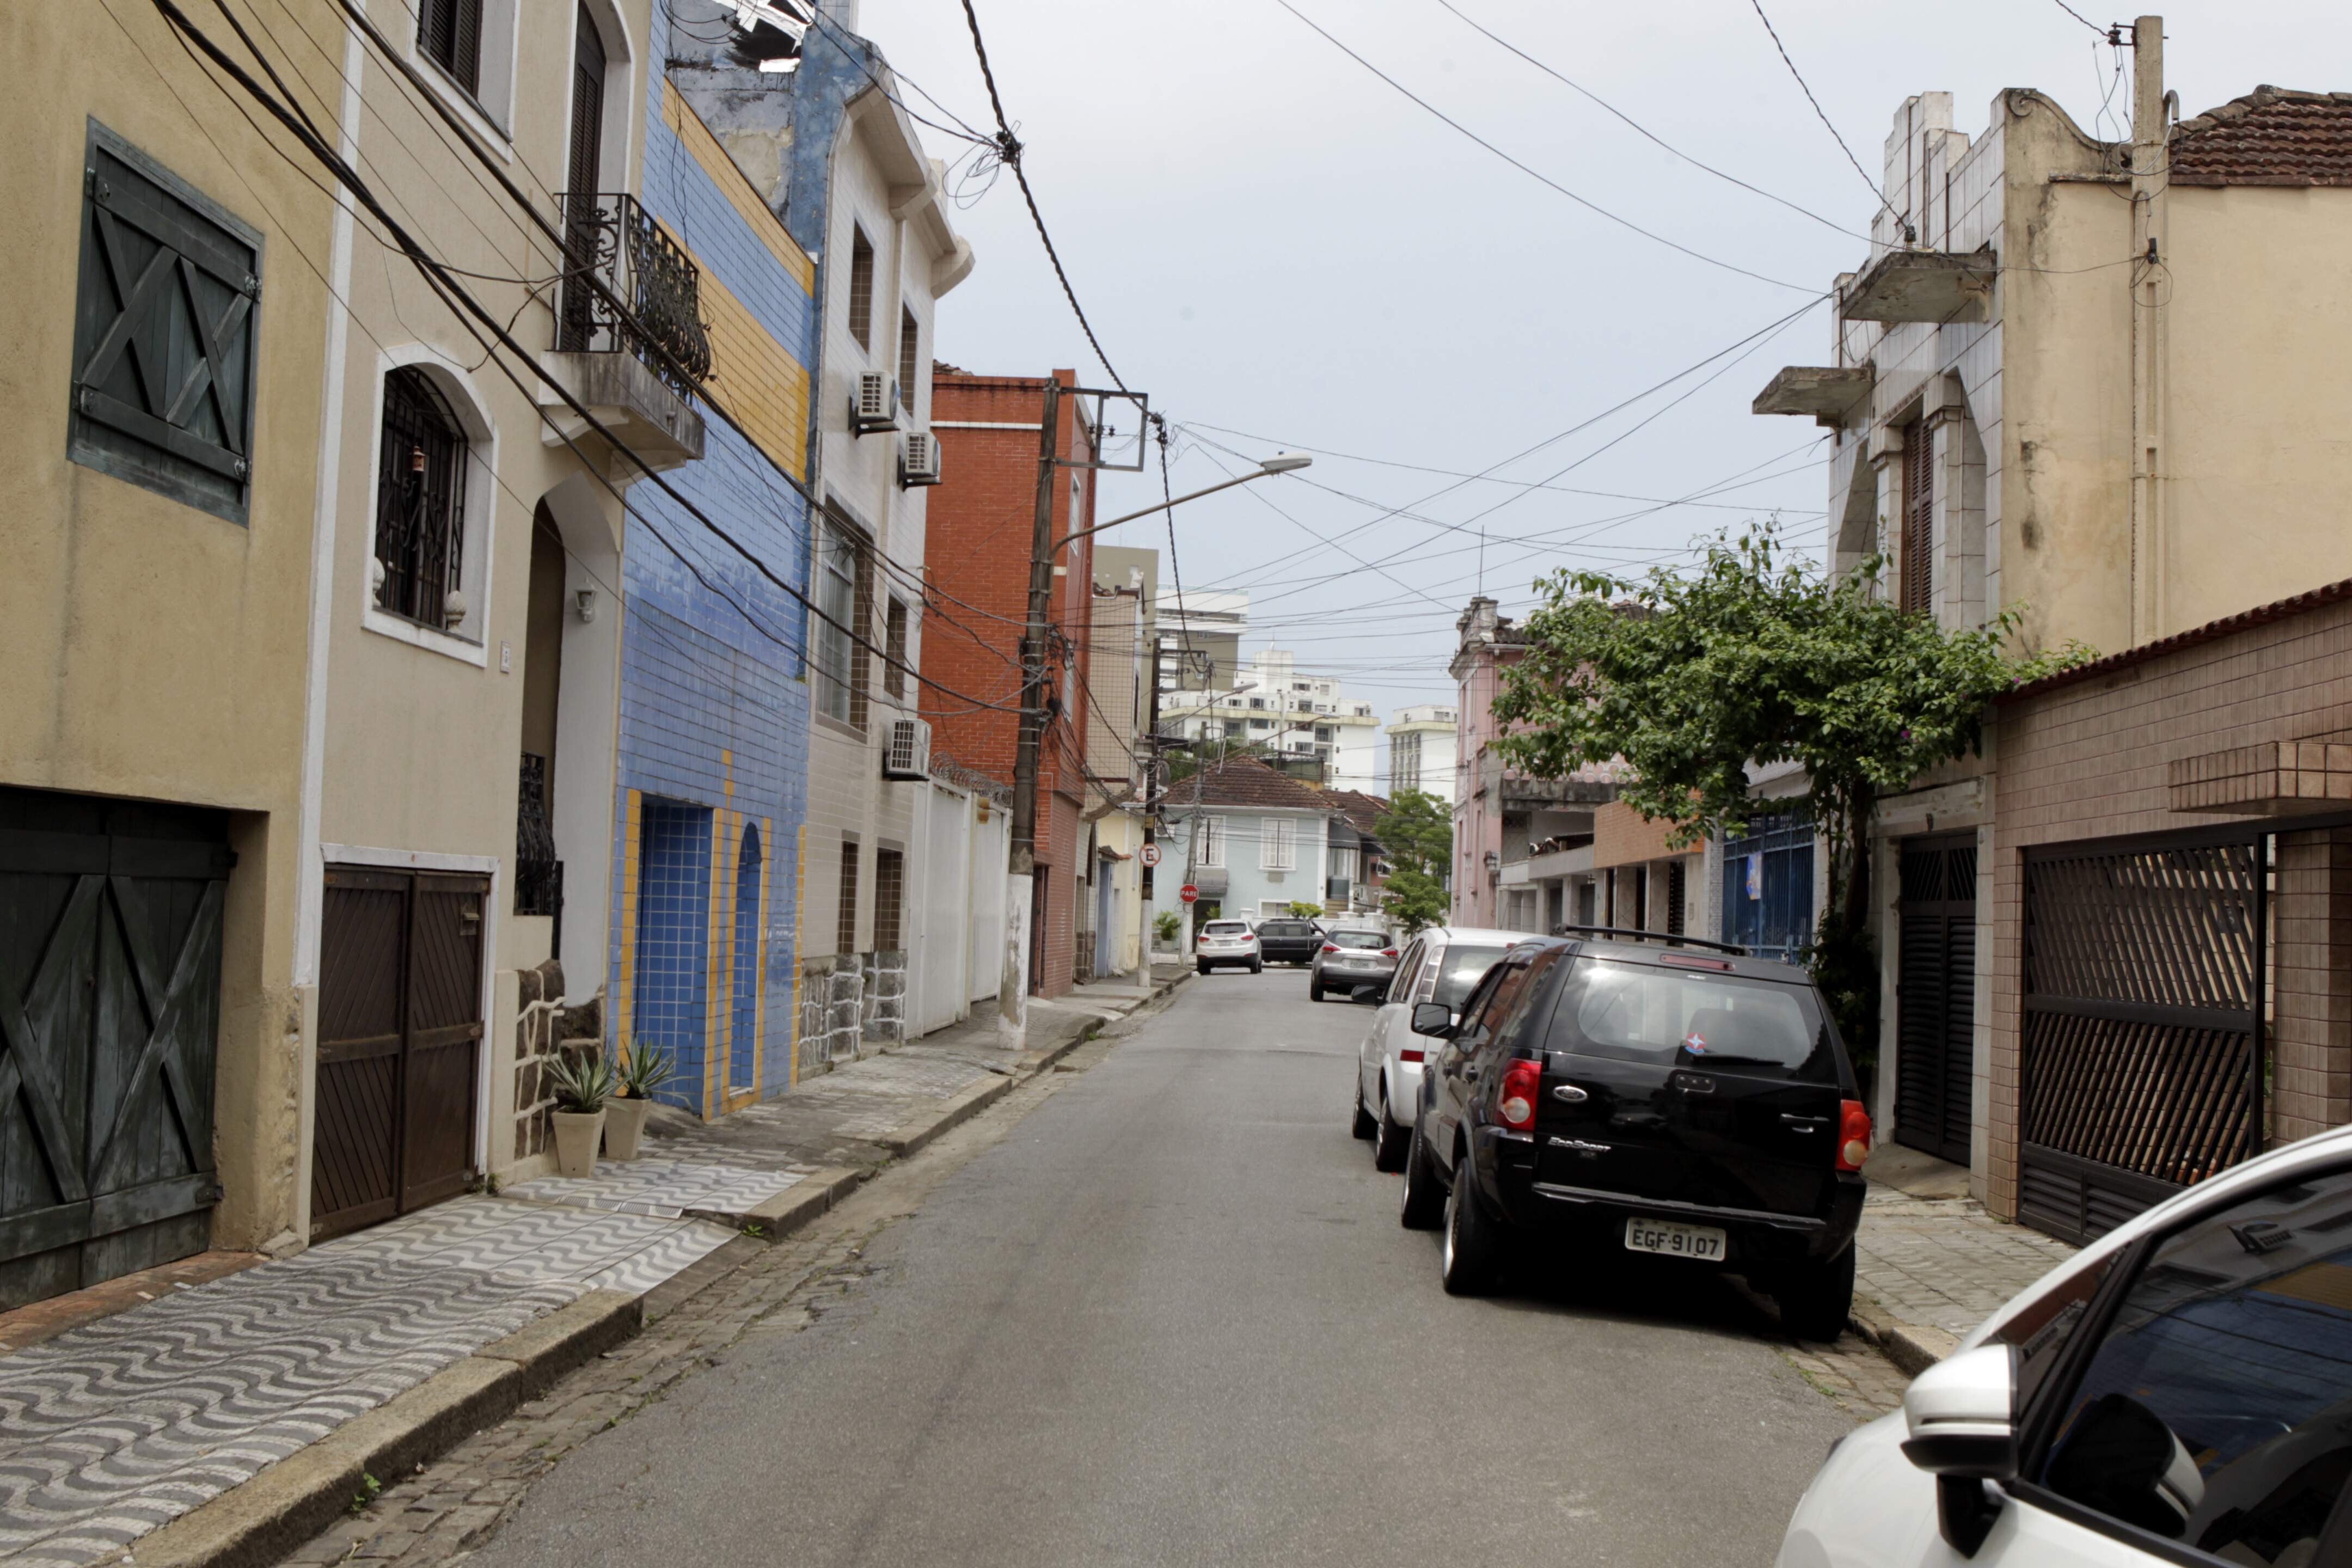 Moradores relatam tranquilidade e tradição da Vila Belmiro, em Santos